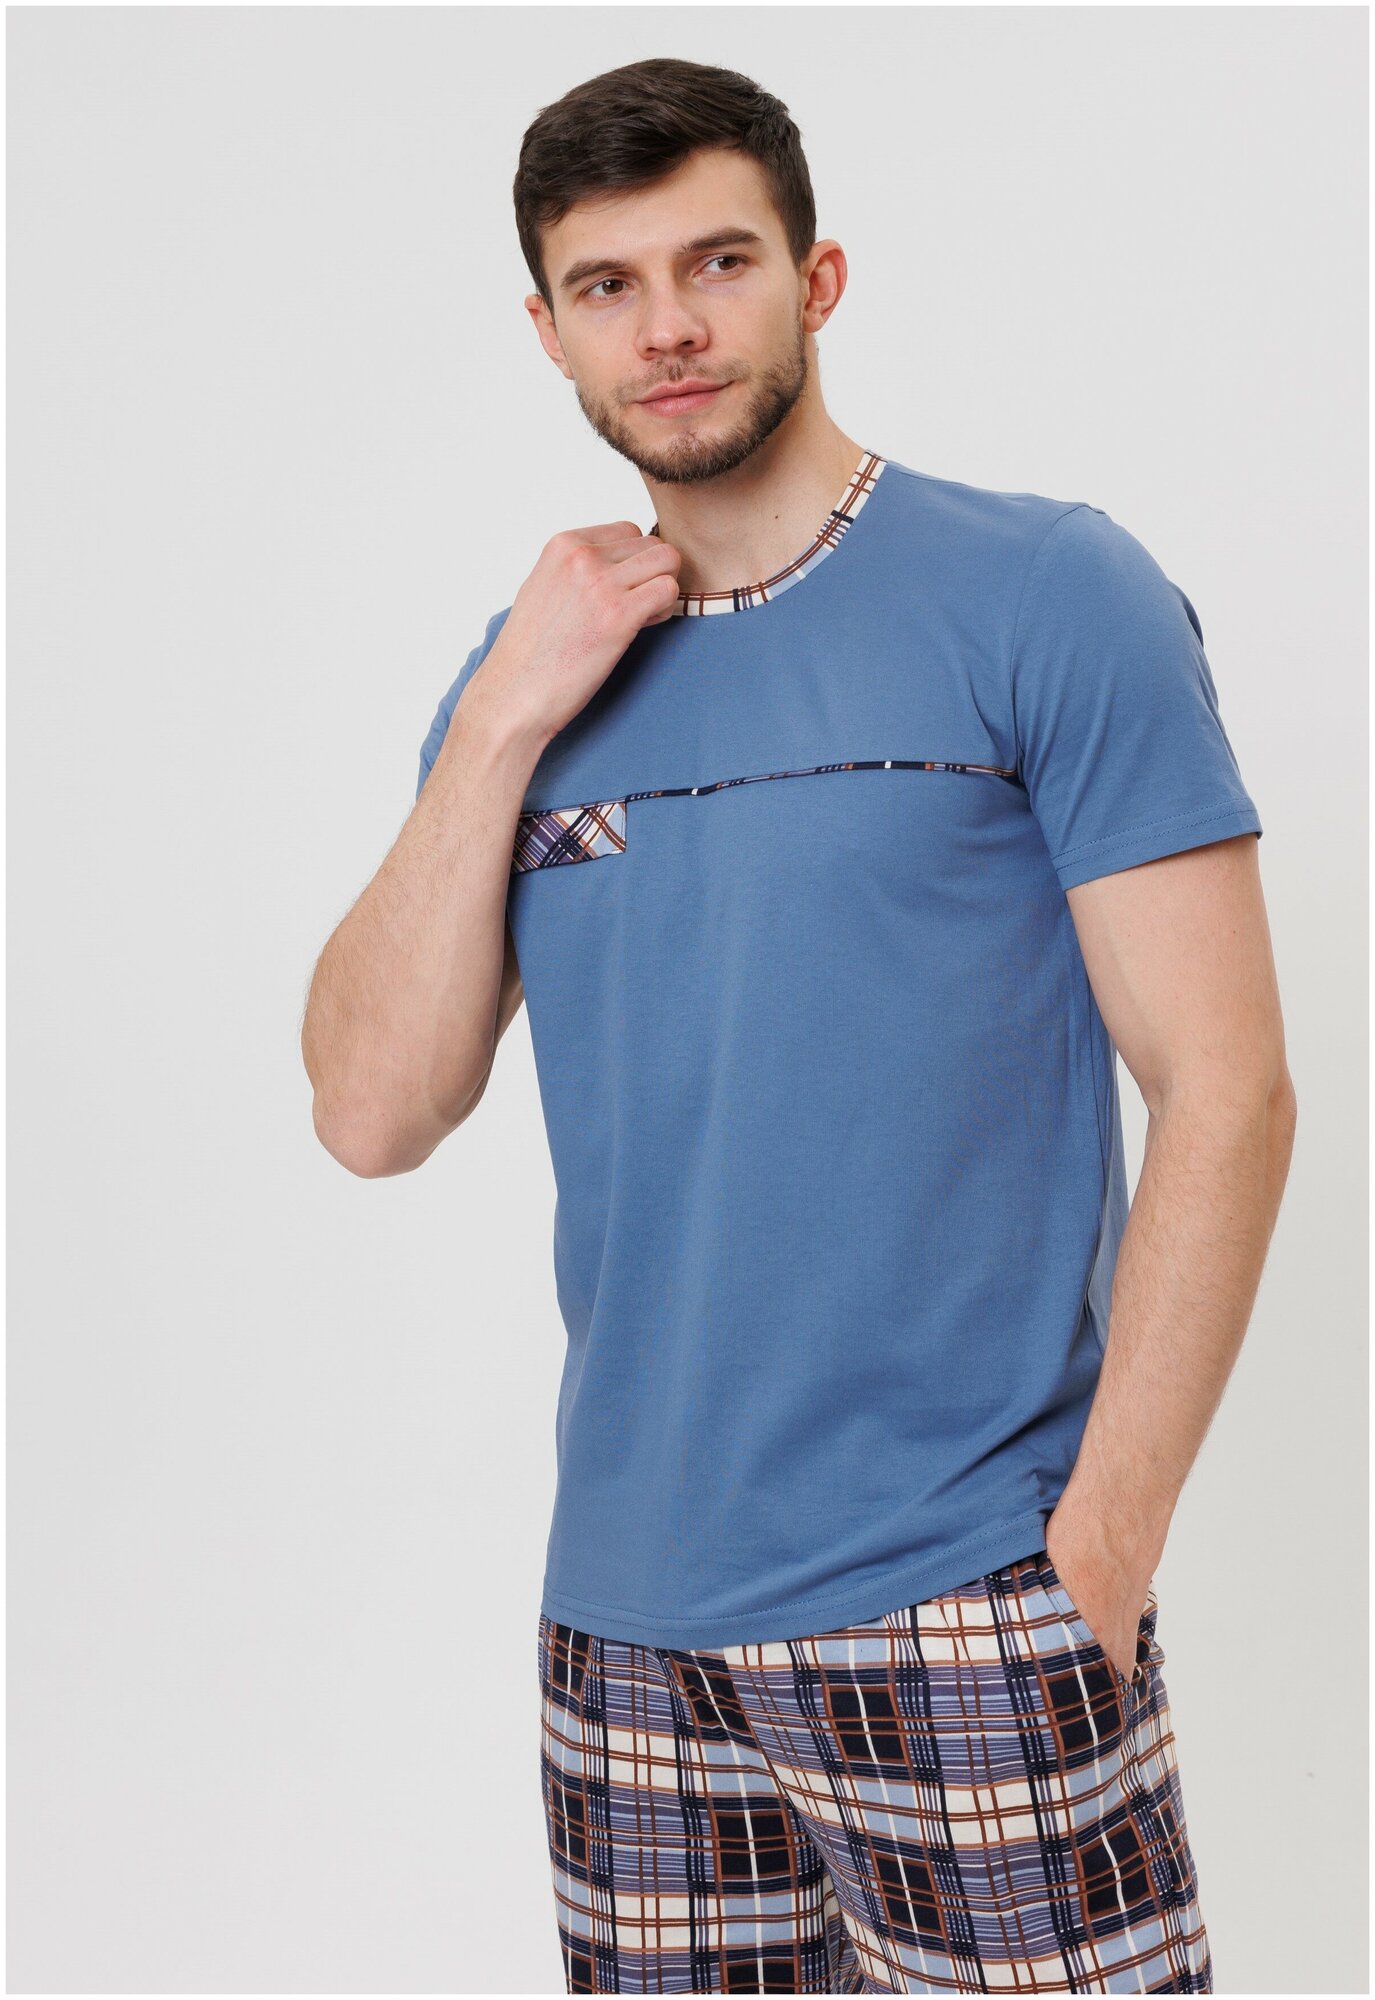 Костюм мужской домашний Modellini 1722/1 футболка с бриджами - фотография № 2